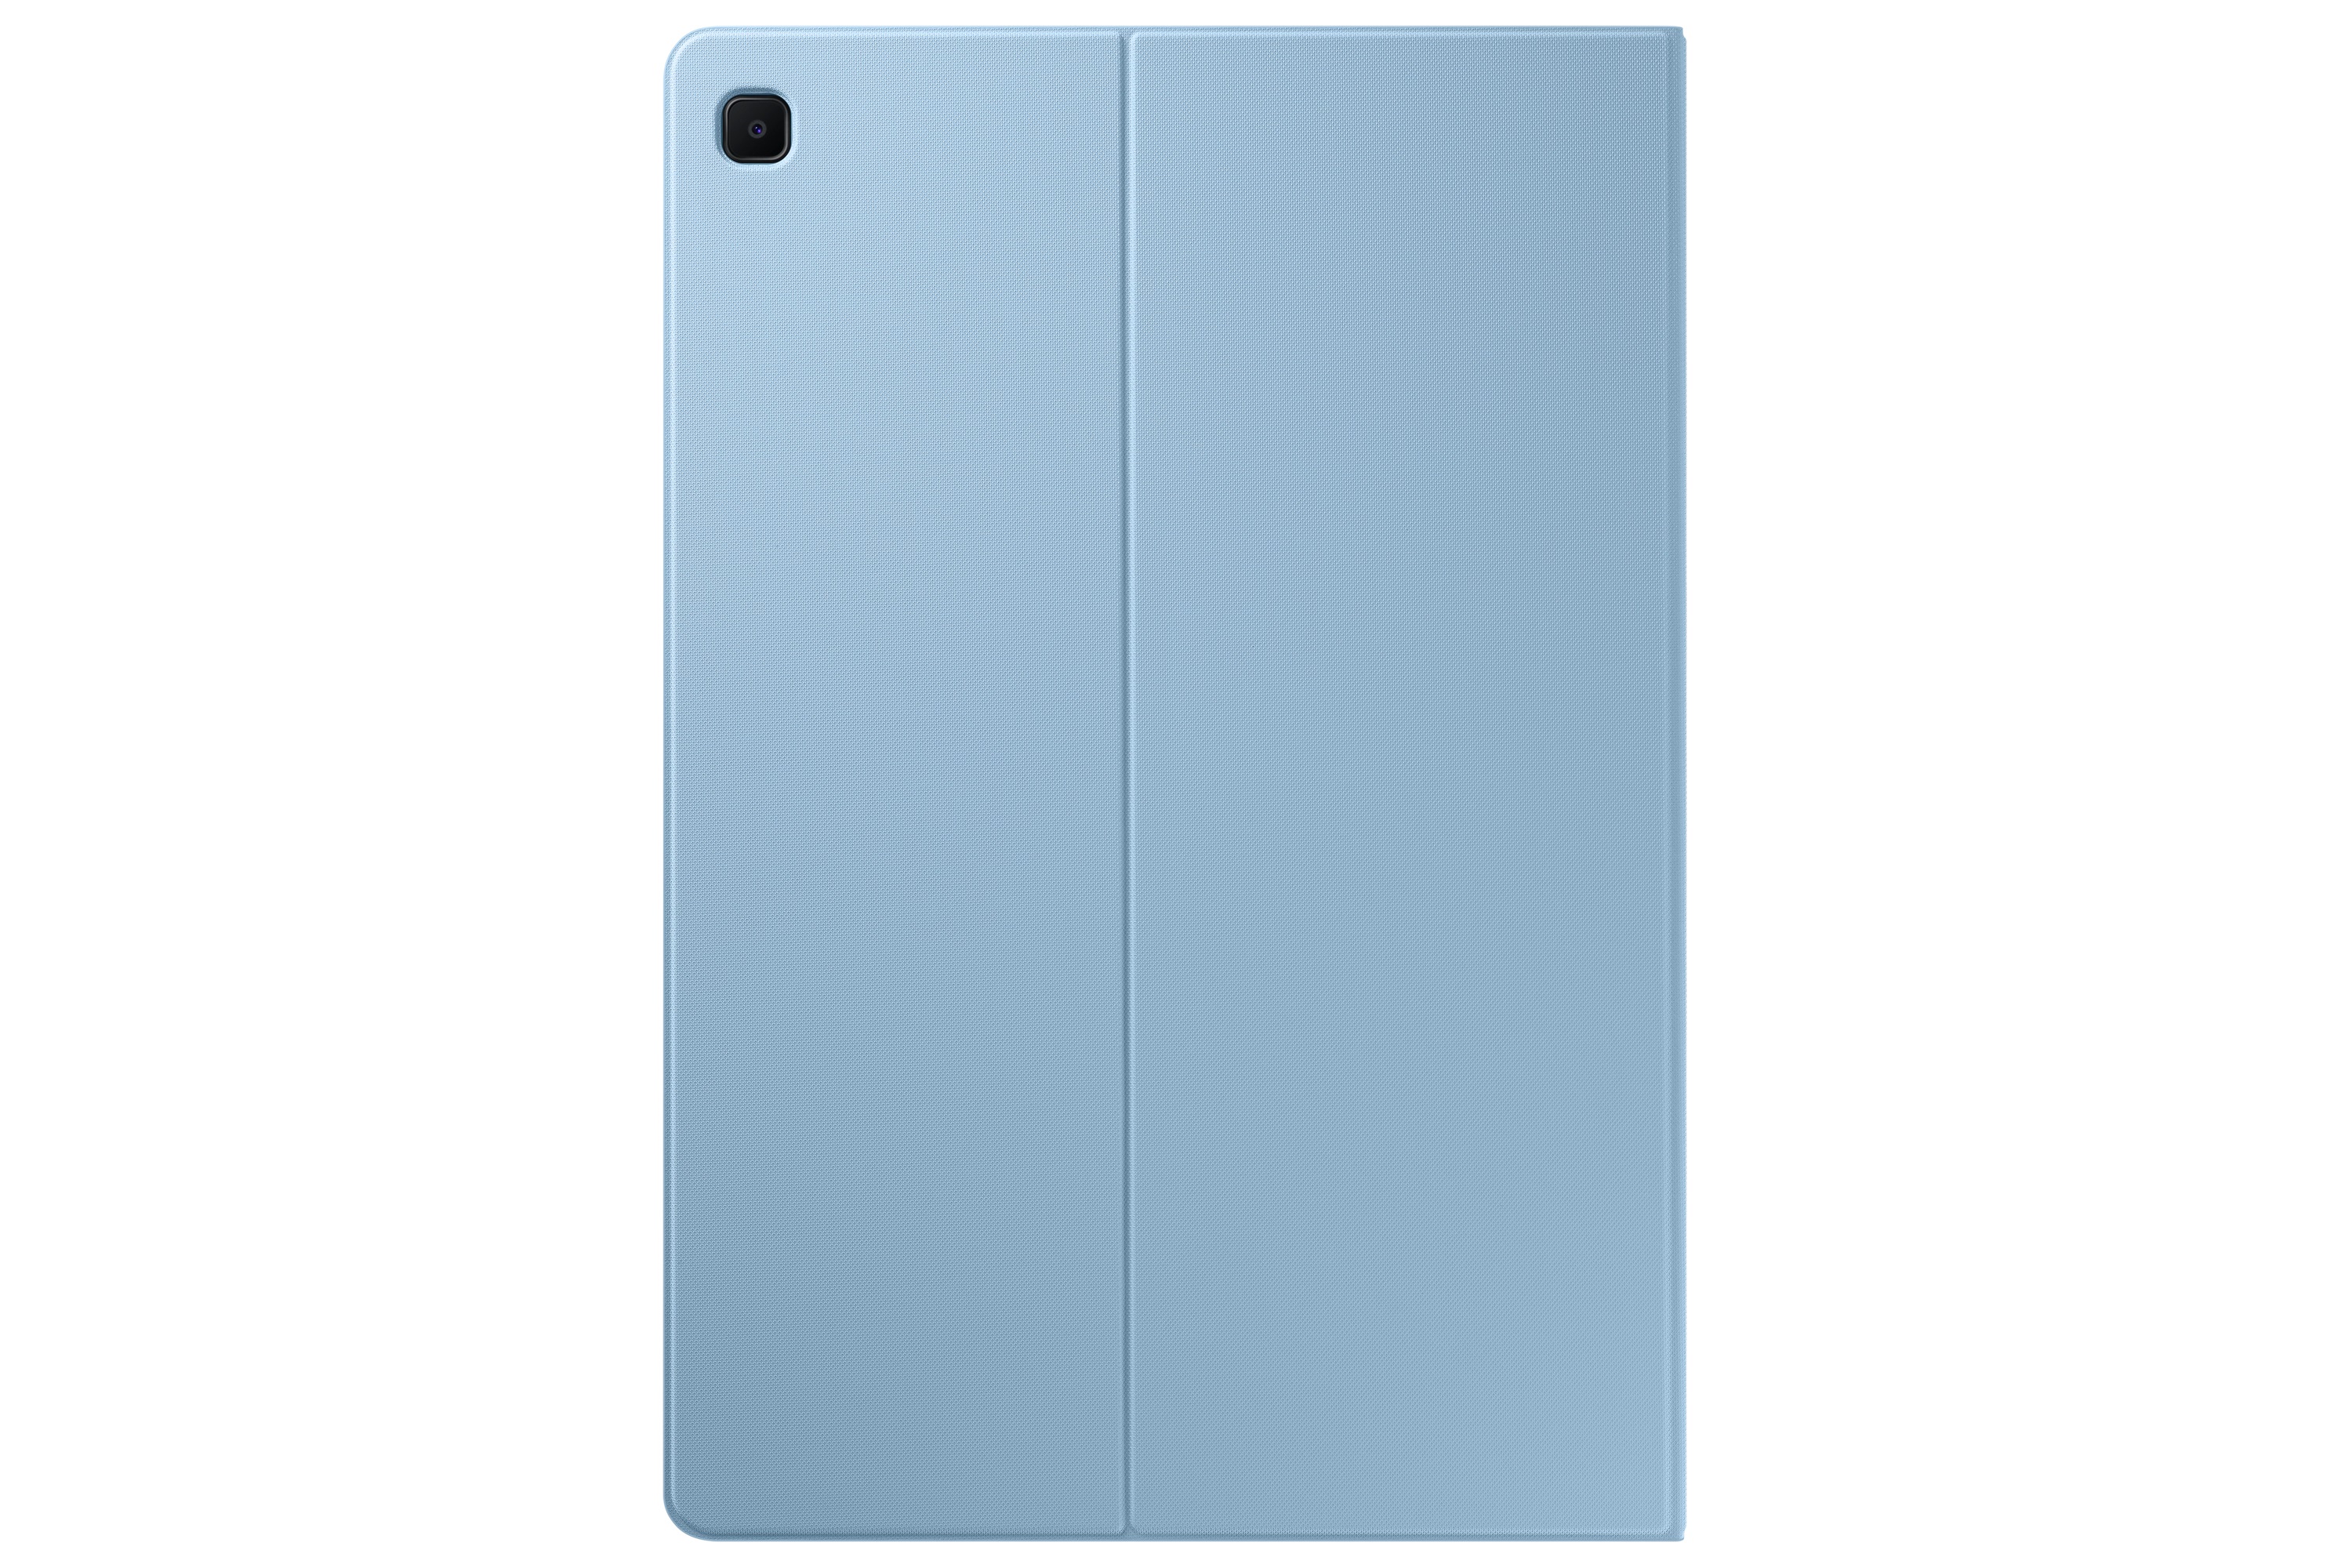 Puzdro polohovateľné originálne EF-BP610P pre Samsung Galaxy Tab S6 Lite, blue